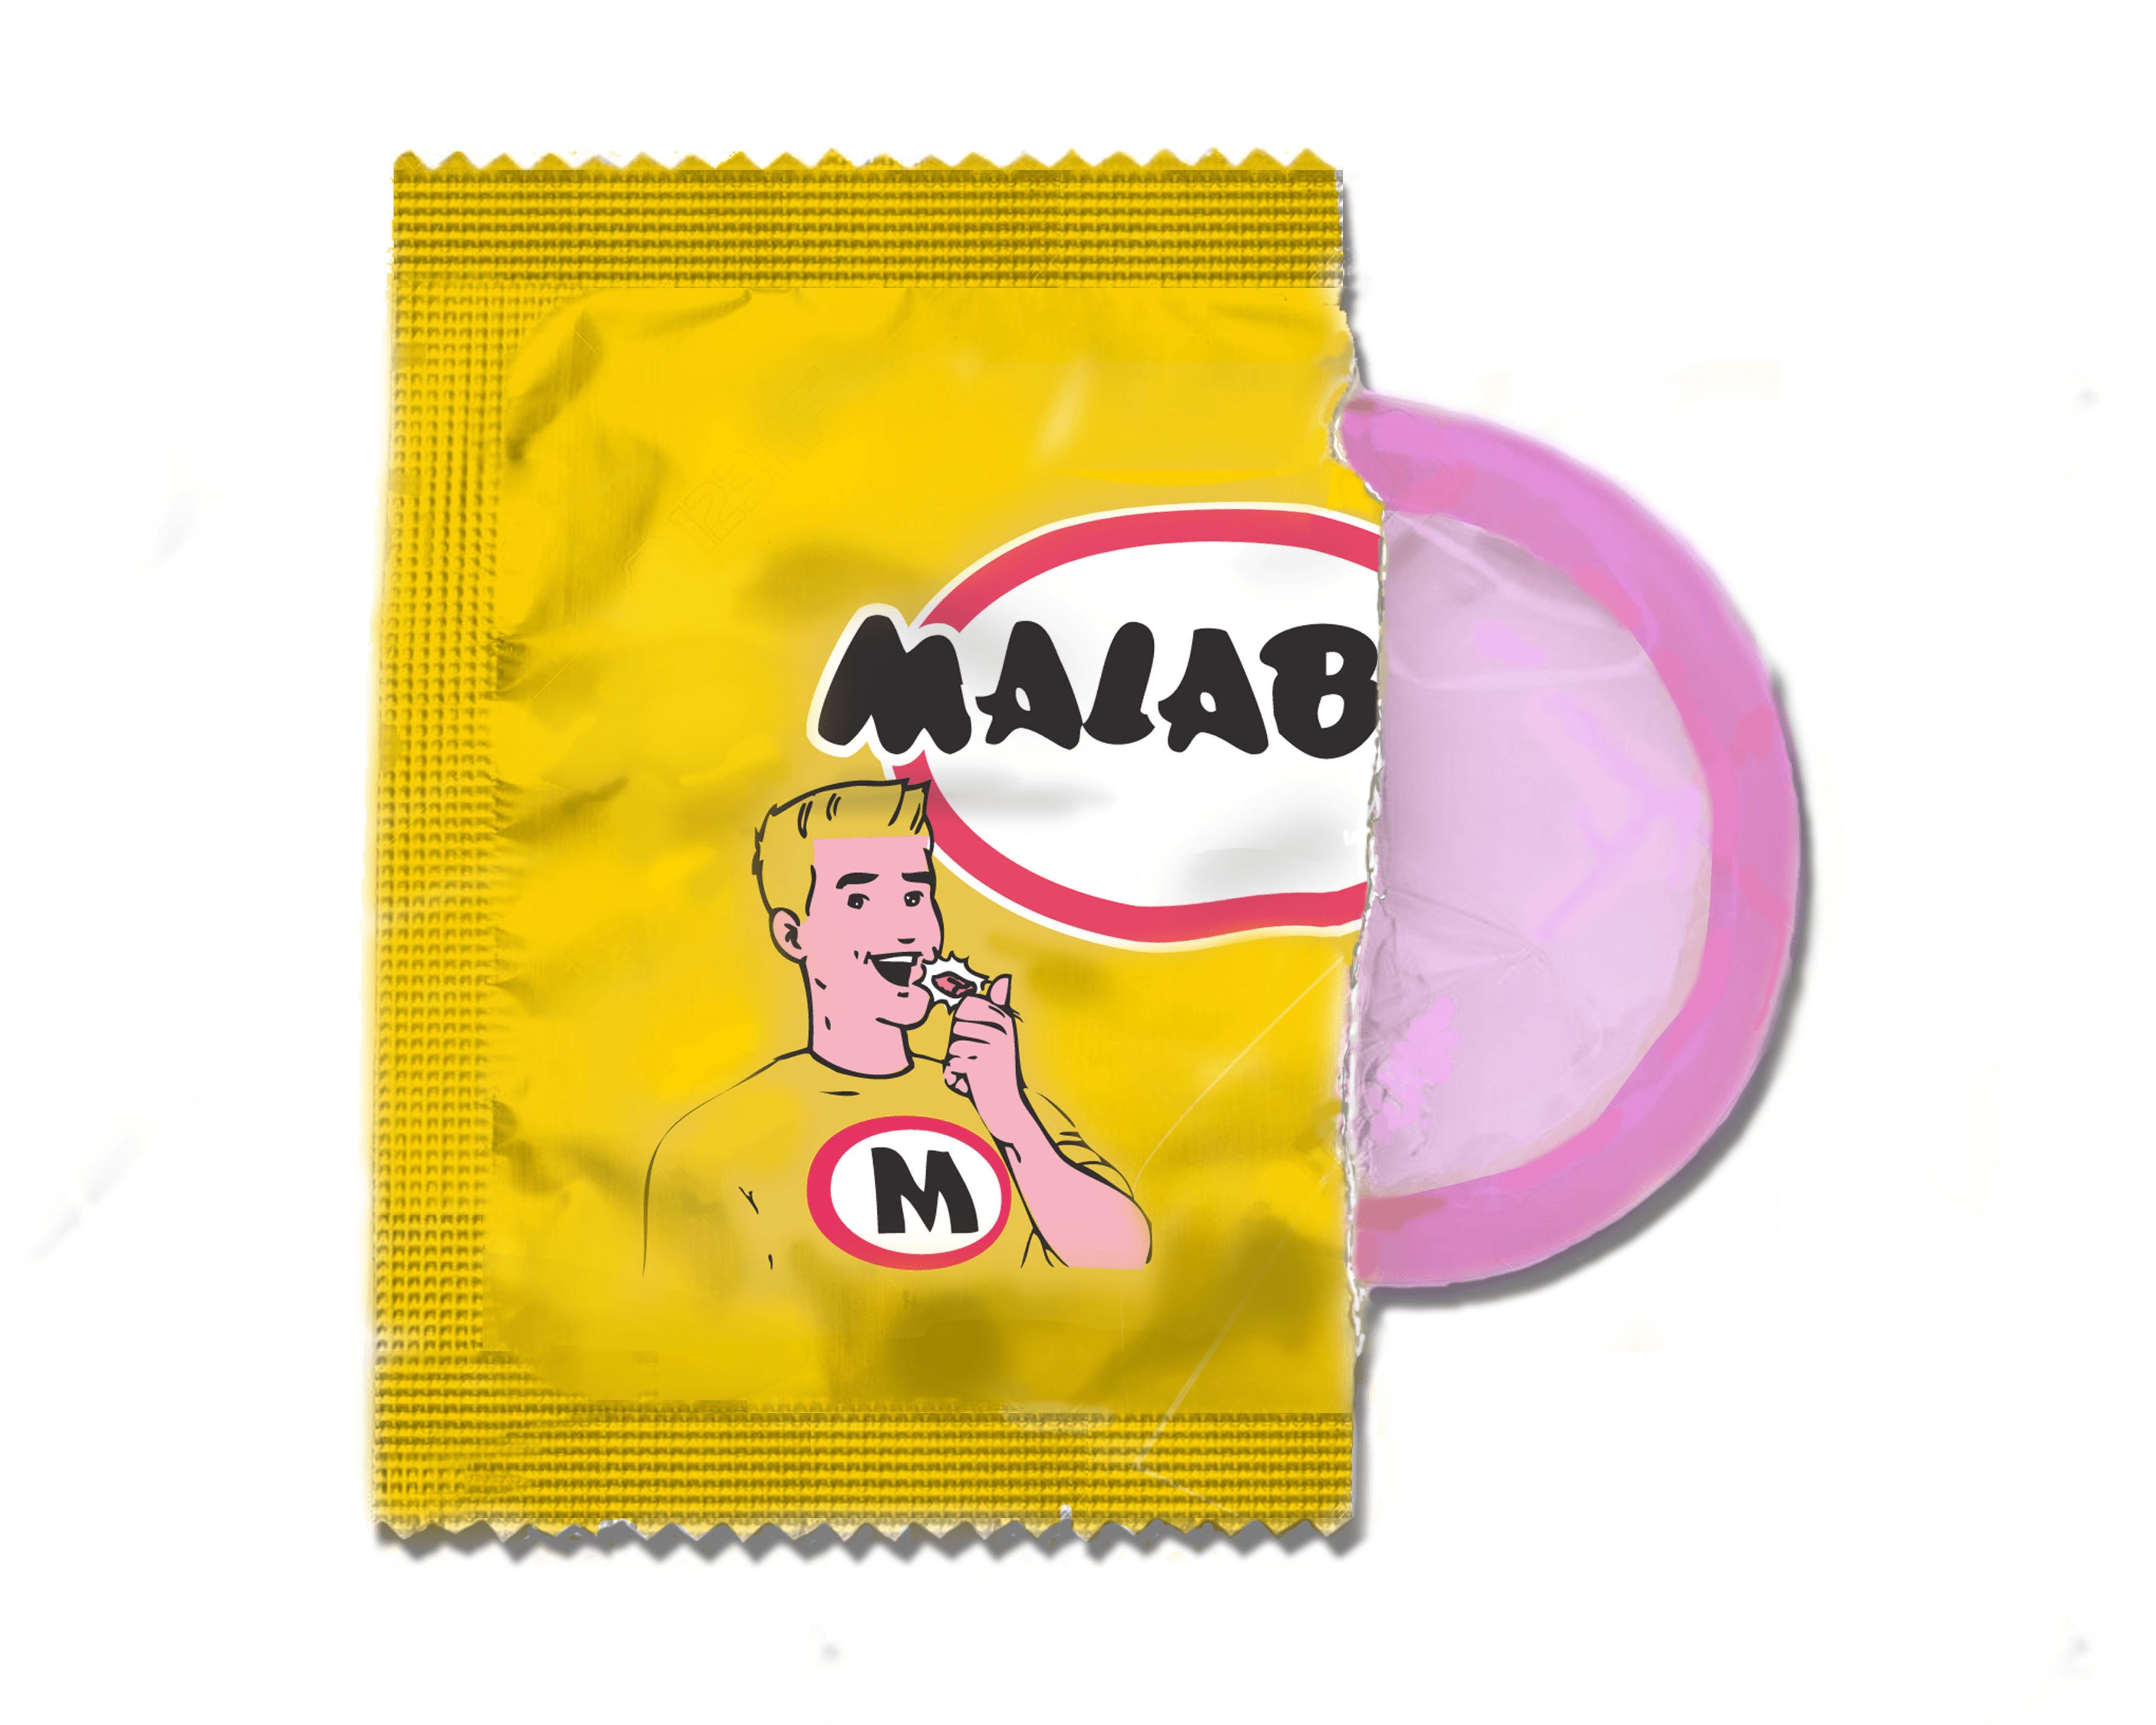 Malabar Condom